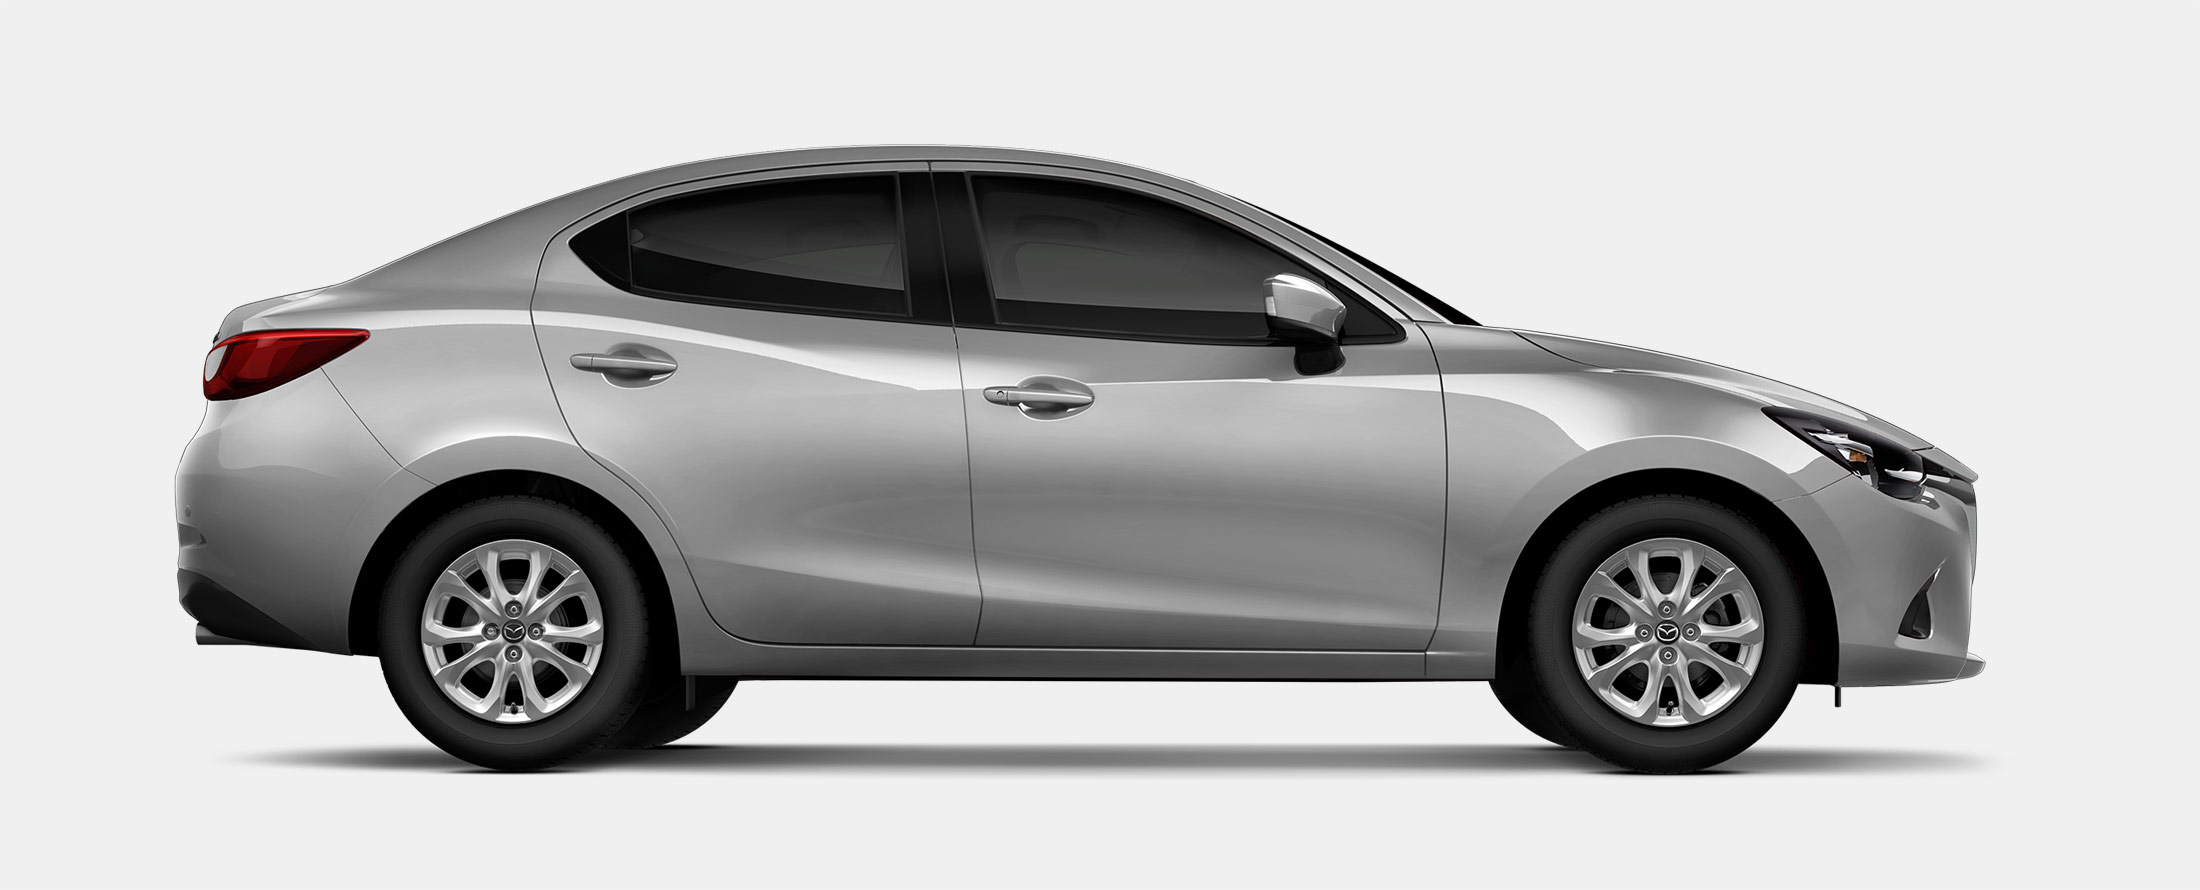 Mazda 2 thế hệ mới sở hữu kích thước tổng thể dài x rộng x cao tương ứng 4.320 x 1.695 x 1.470 mm cùng khoảng sáng gầm xe 143 mm.